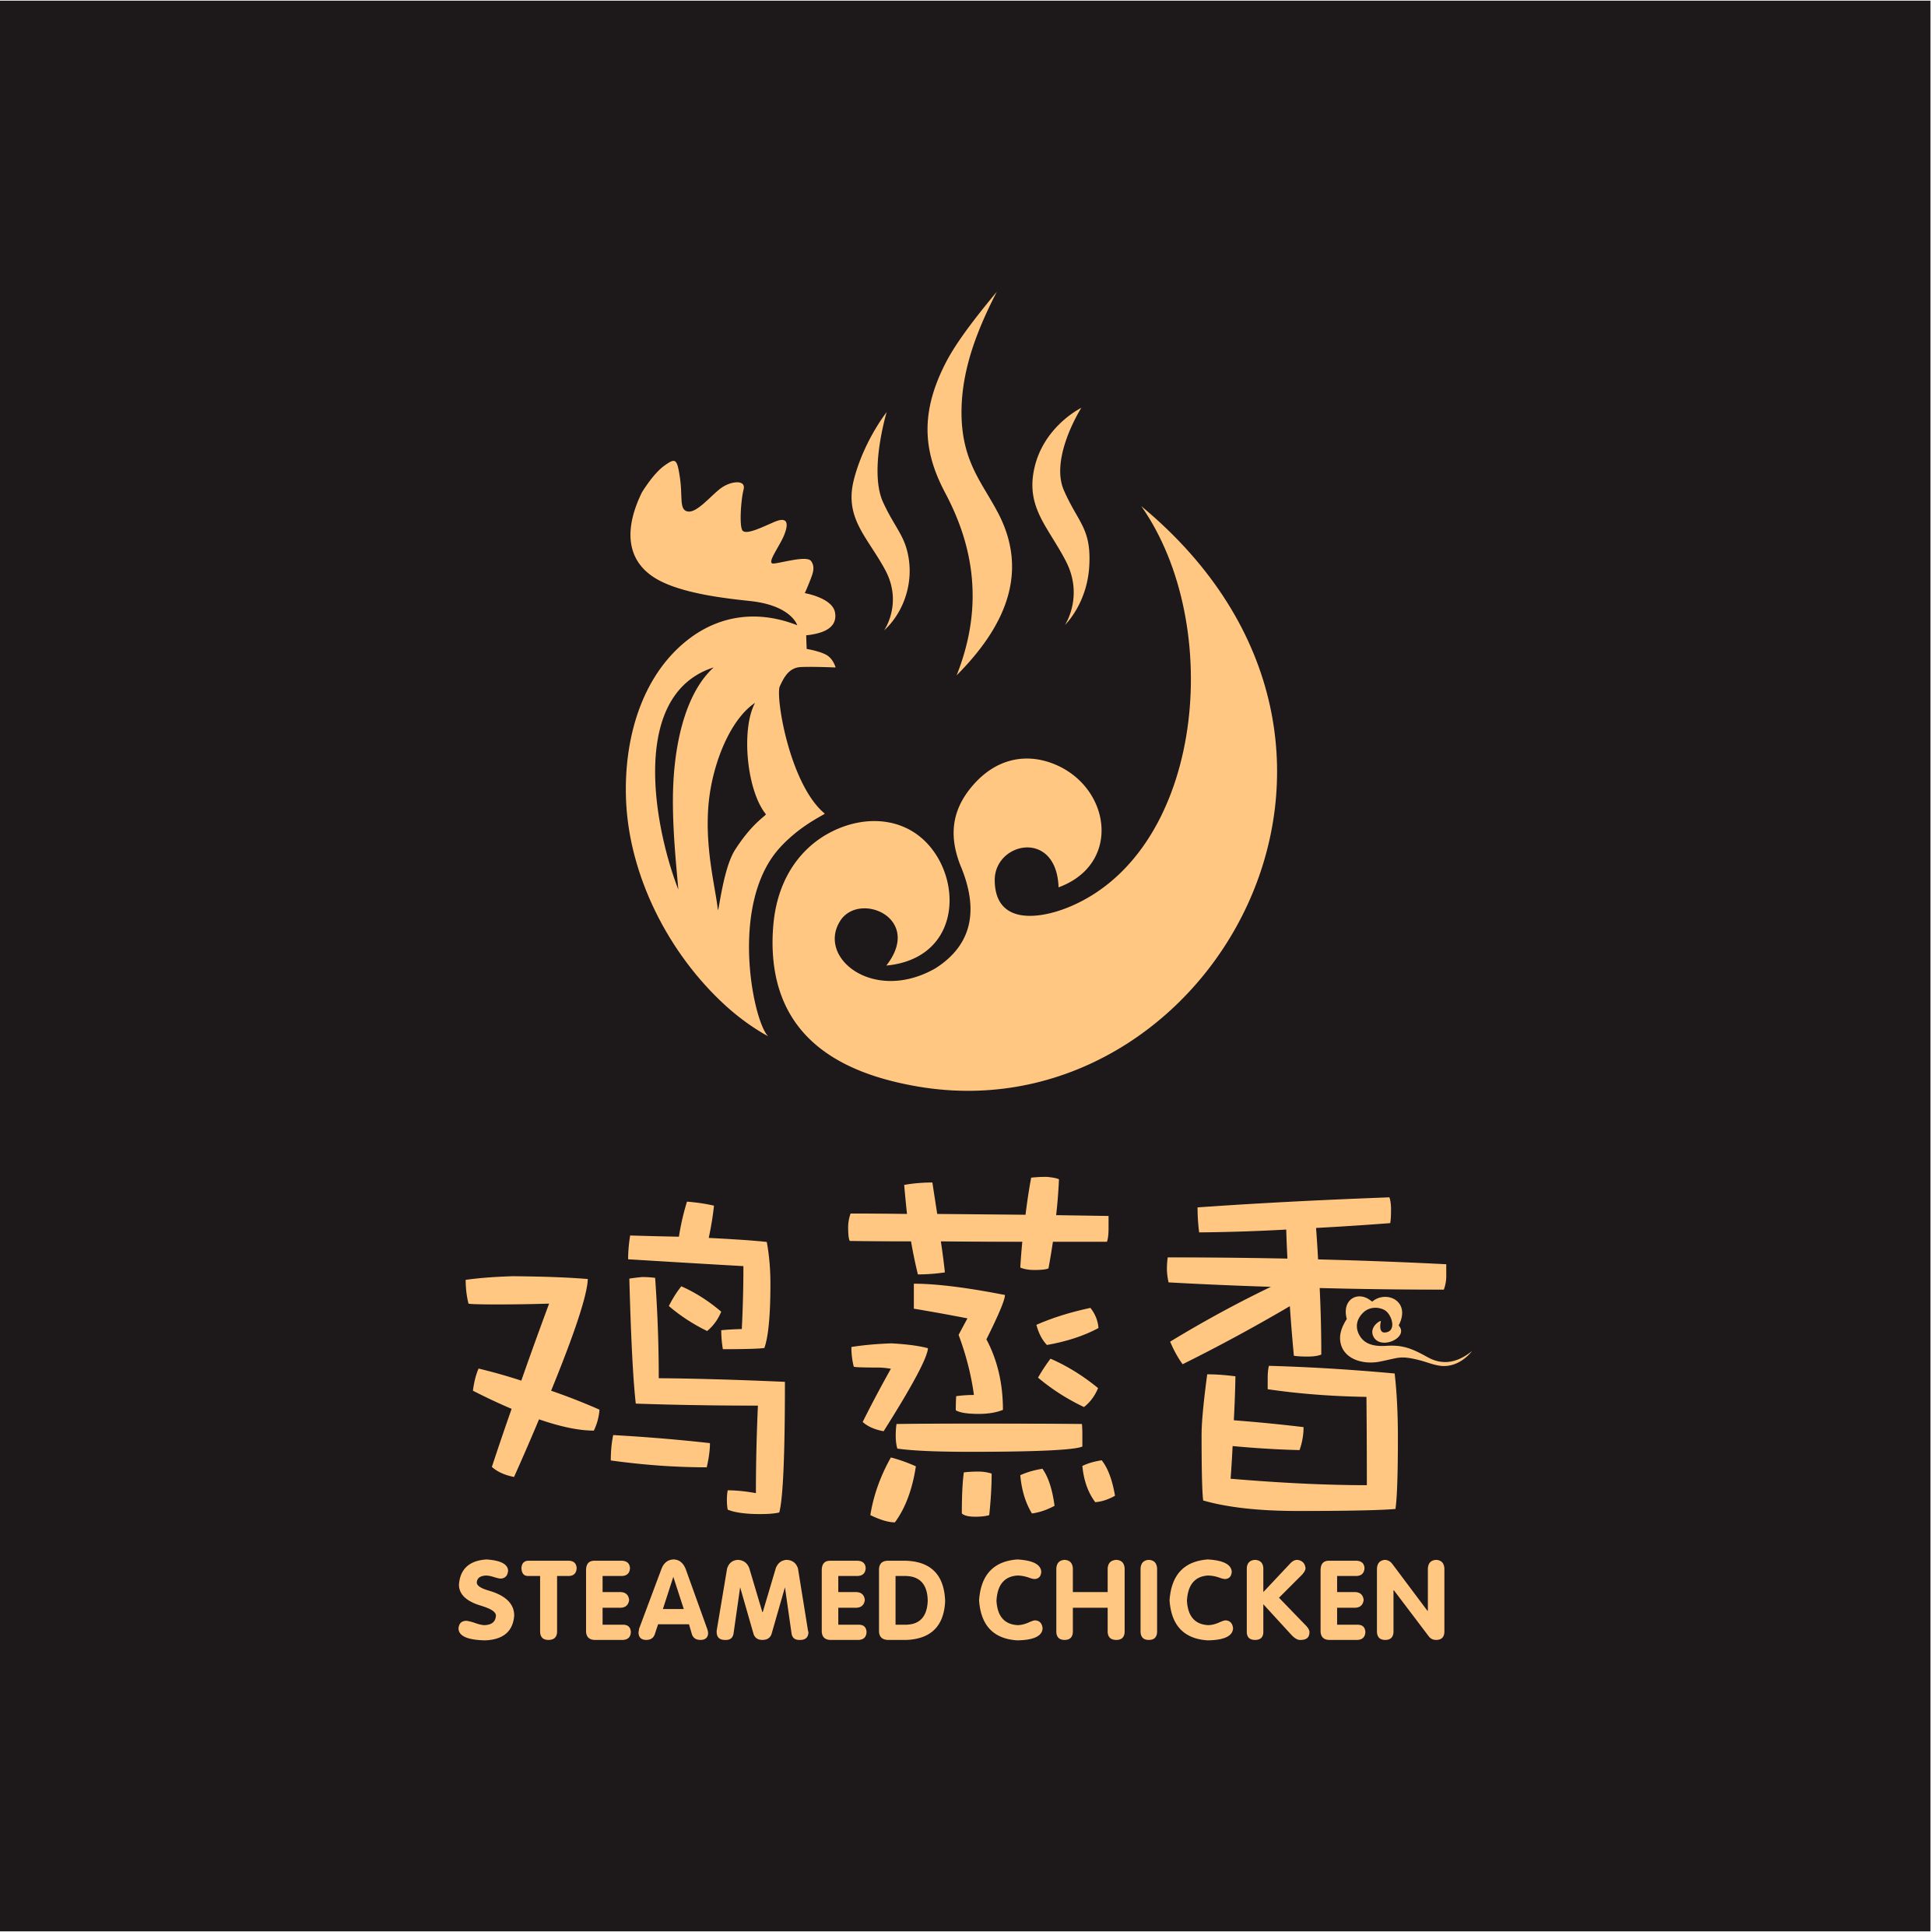 餐饮logo三亚/平面设计师/3年前/2747浏览小幸运djh